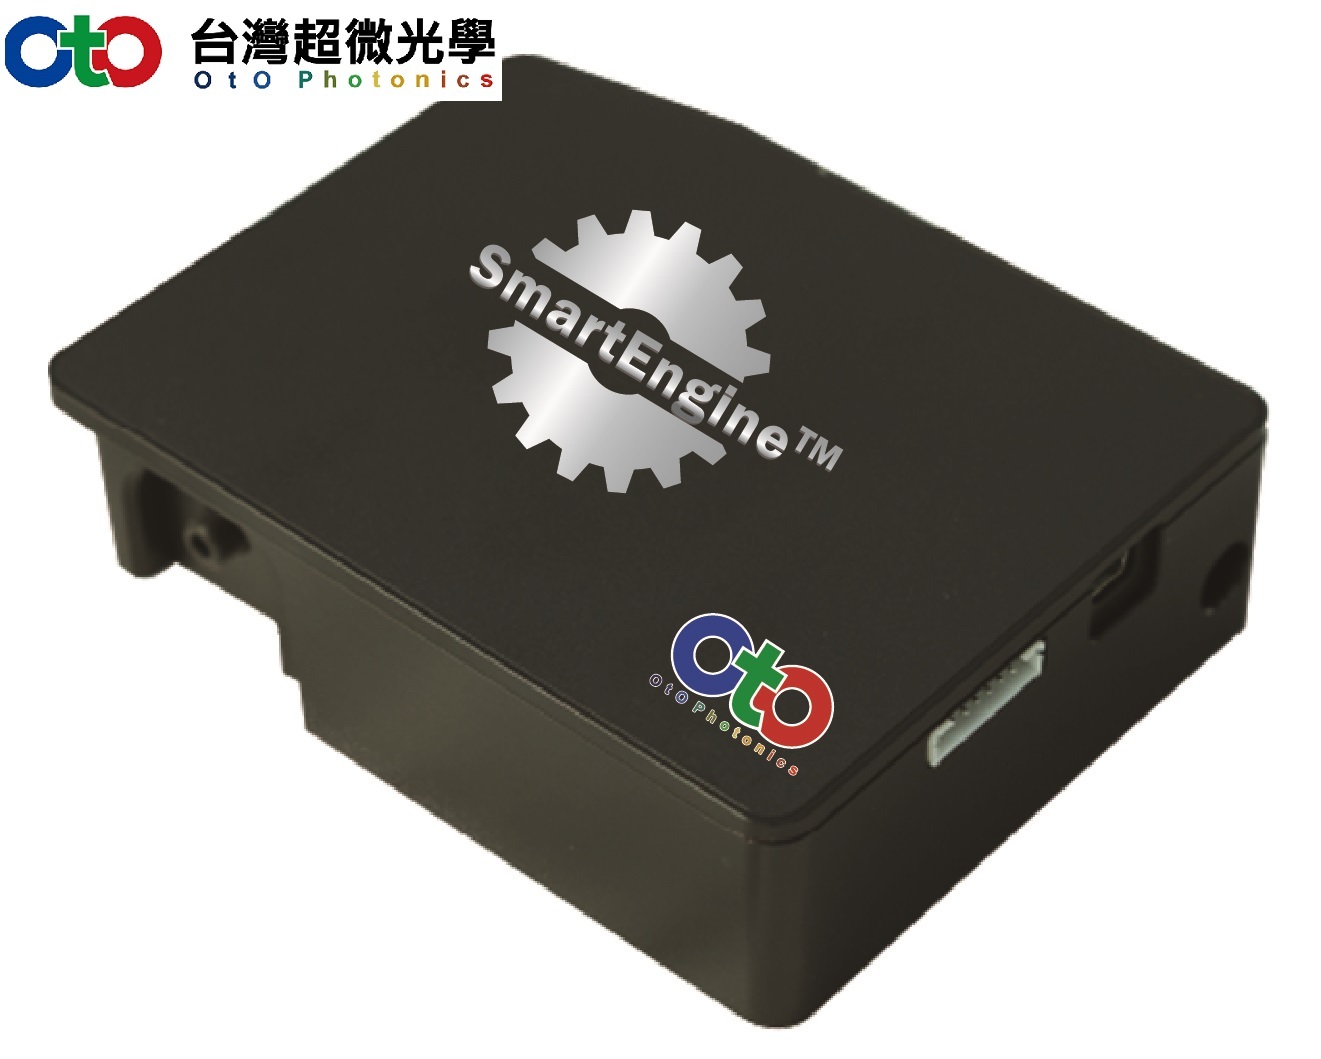 OtO 台湾超微光学 光纤光谱仪--智能引擎3号